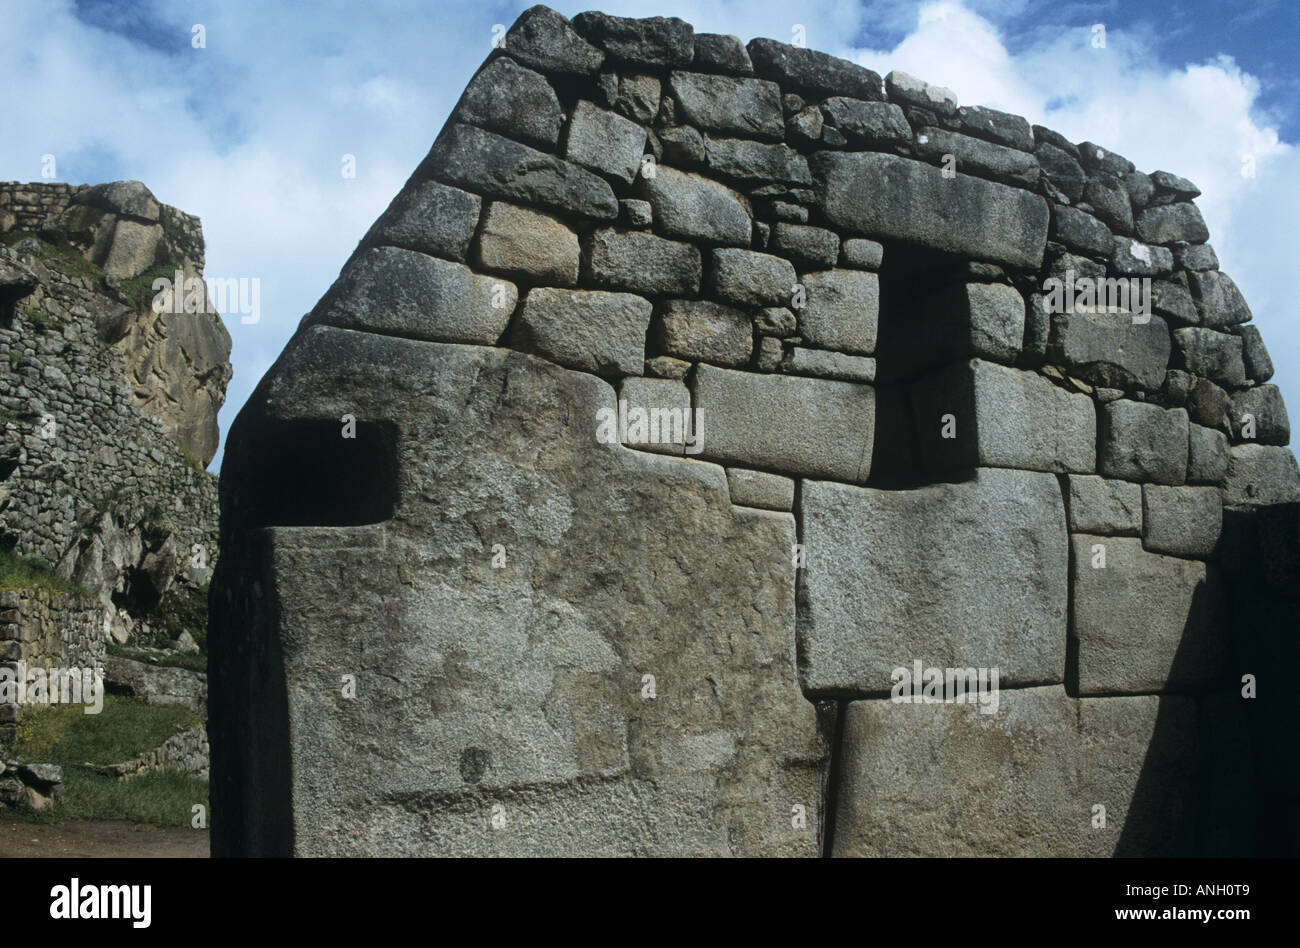 En la sagrada ciudad Inca de Machu Picchu, una construcción Inca con una piedra de 32 caras es uno de los santuarios muchas maravillas Foto de stock